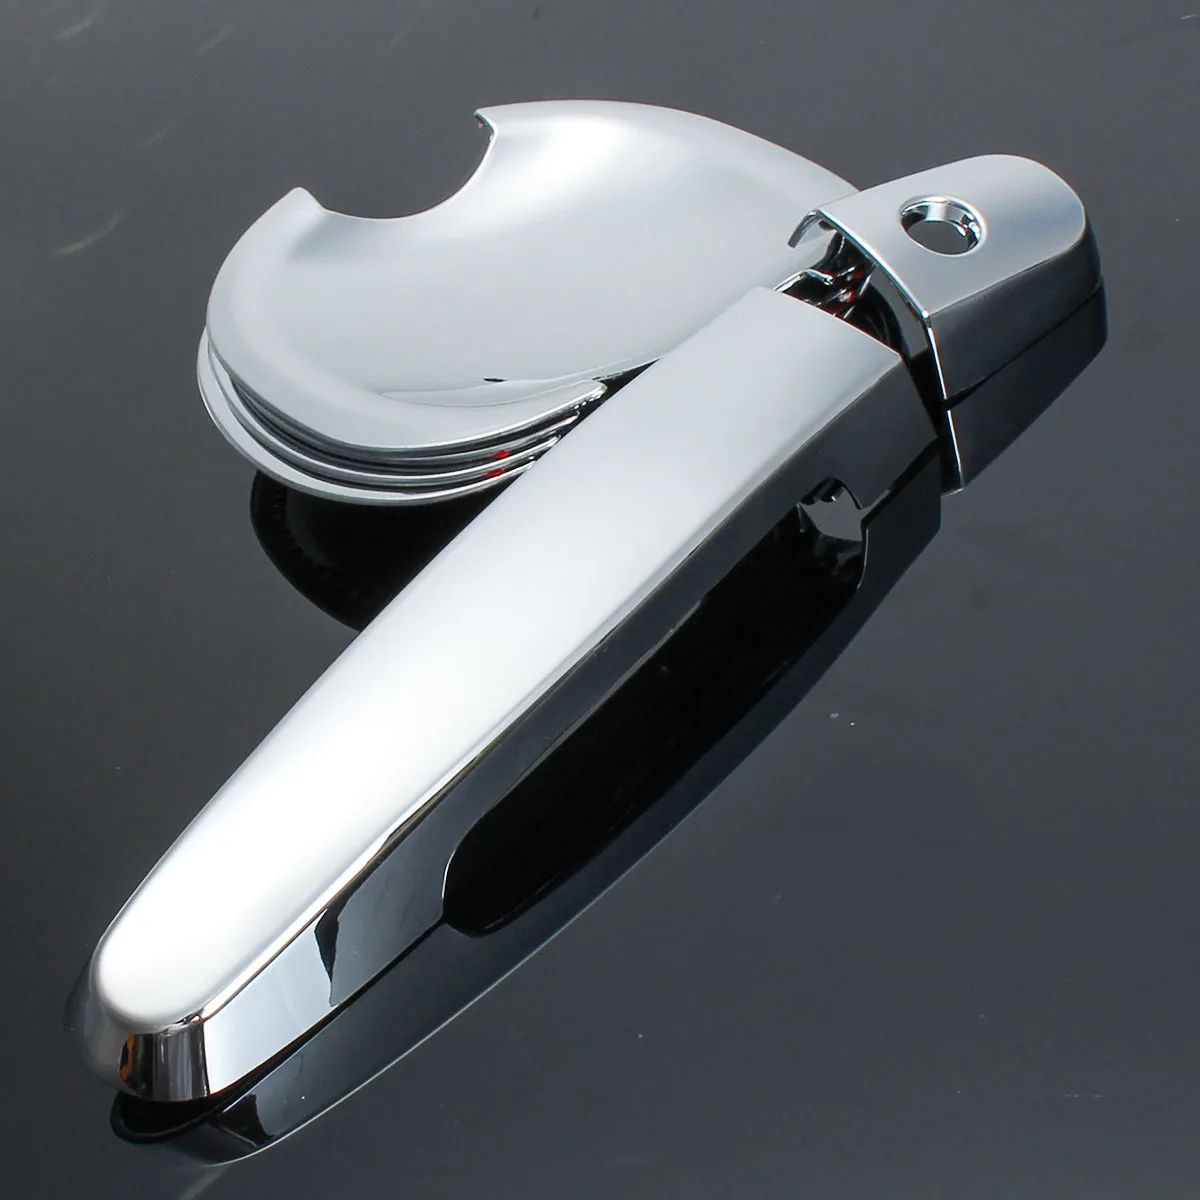 12 x Авто хромированная наружная дверная ручка Накладка комплект для TOYOTA Corolla Camry RAV4 w/чаши хромированная отделка